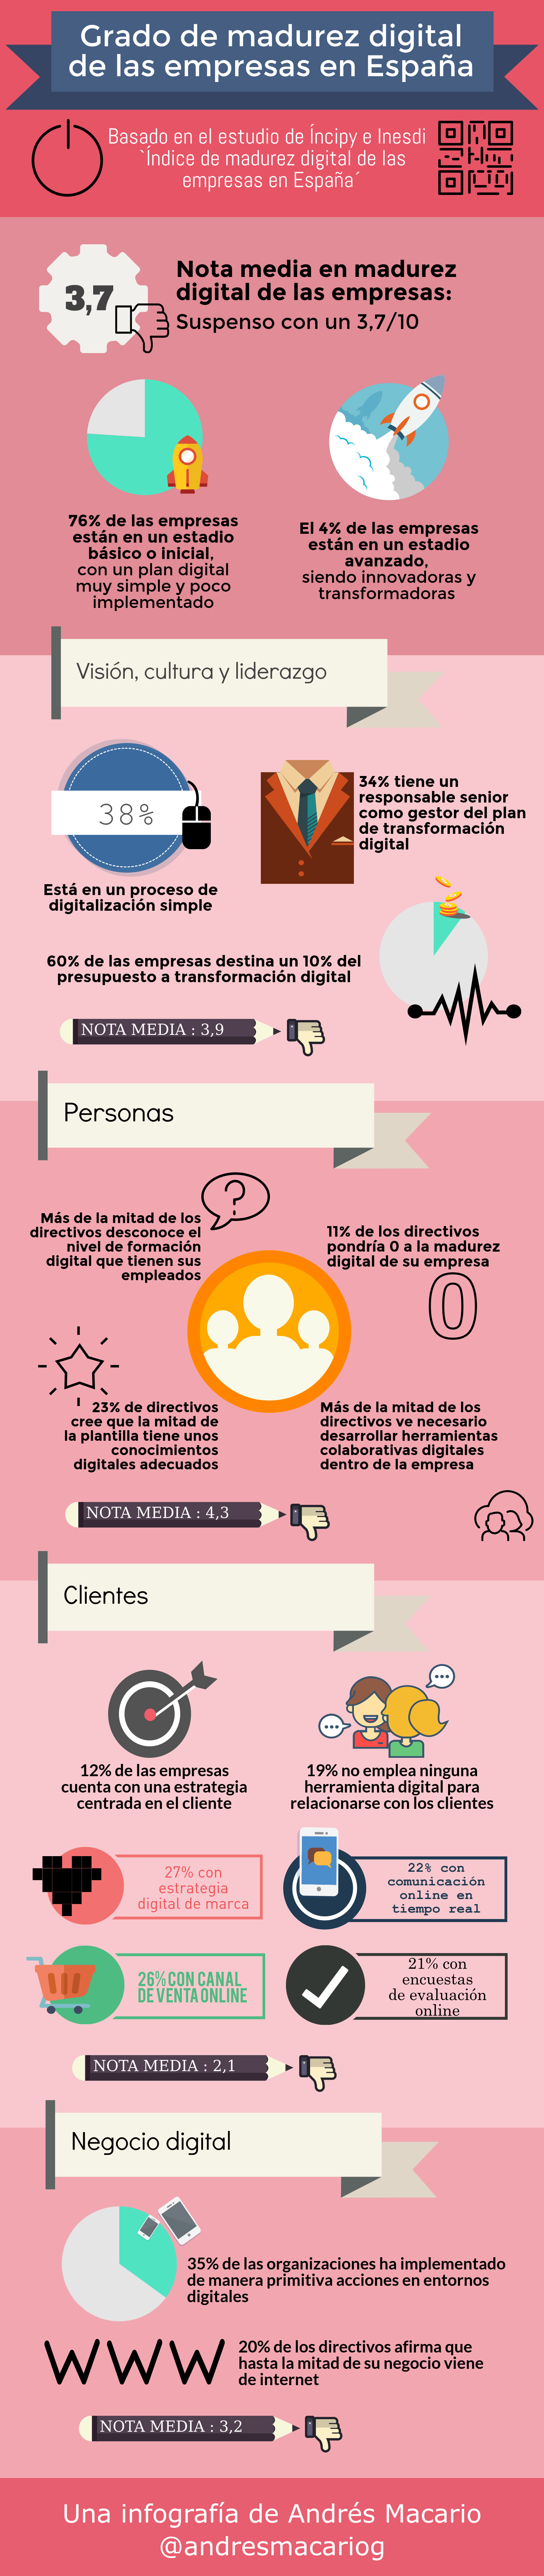 Grado de madurez digital de las empresas en España - Infografía Andrés Macario